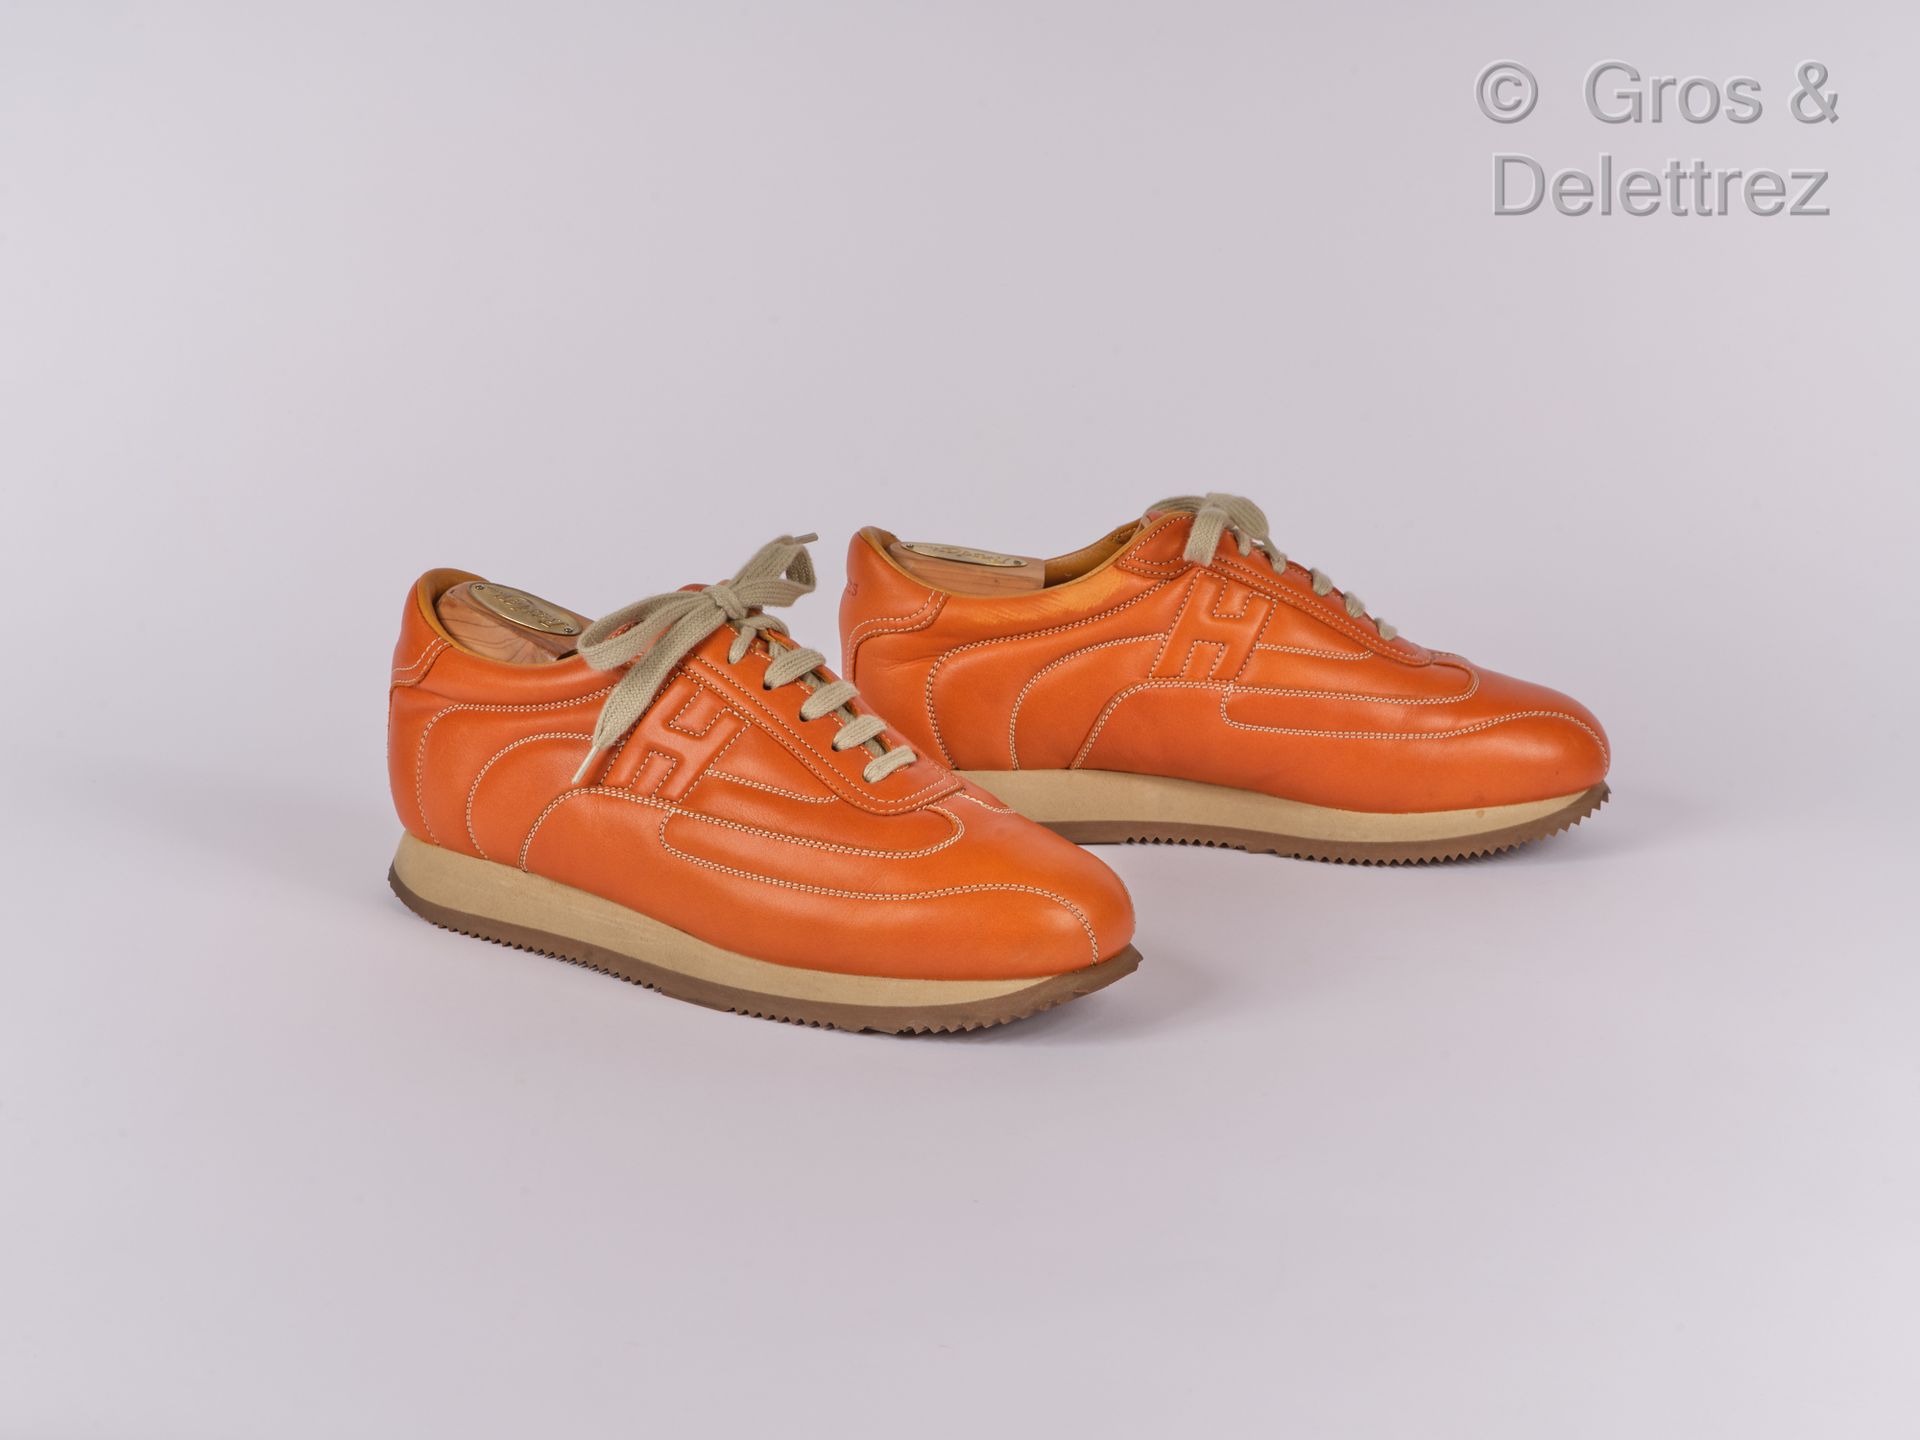 HERMES Paris made in Italy Par de zapatillas con cordones "Quick" en color naran&hellip;